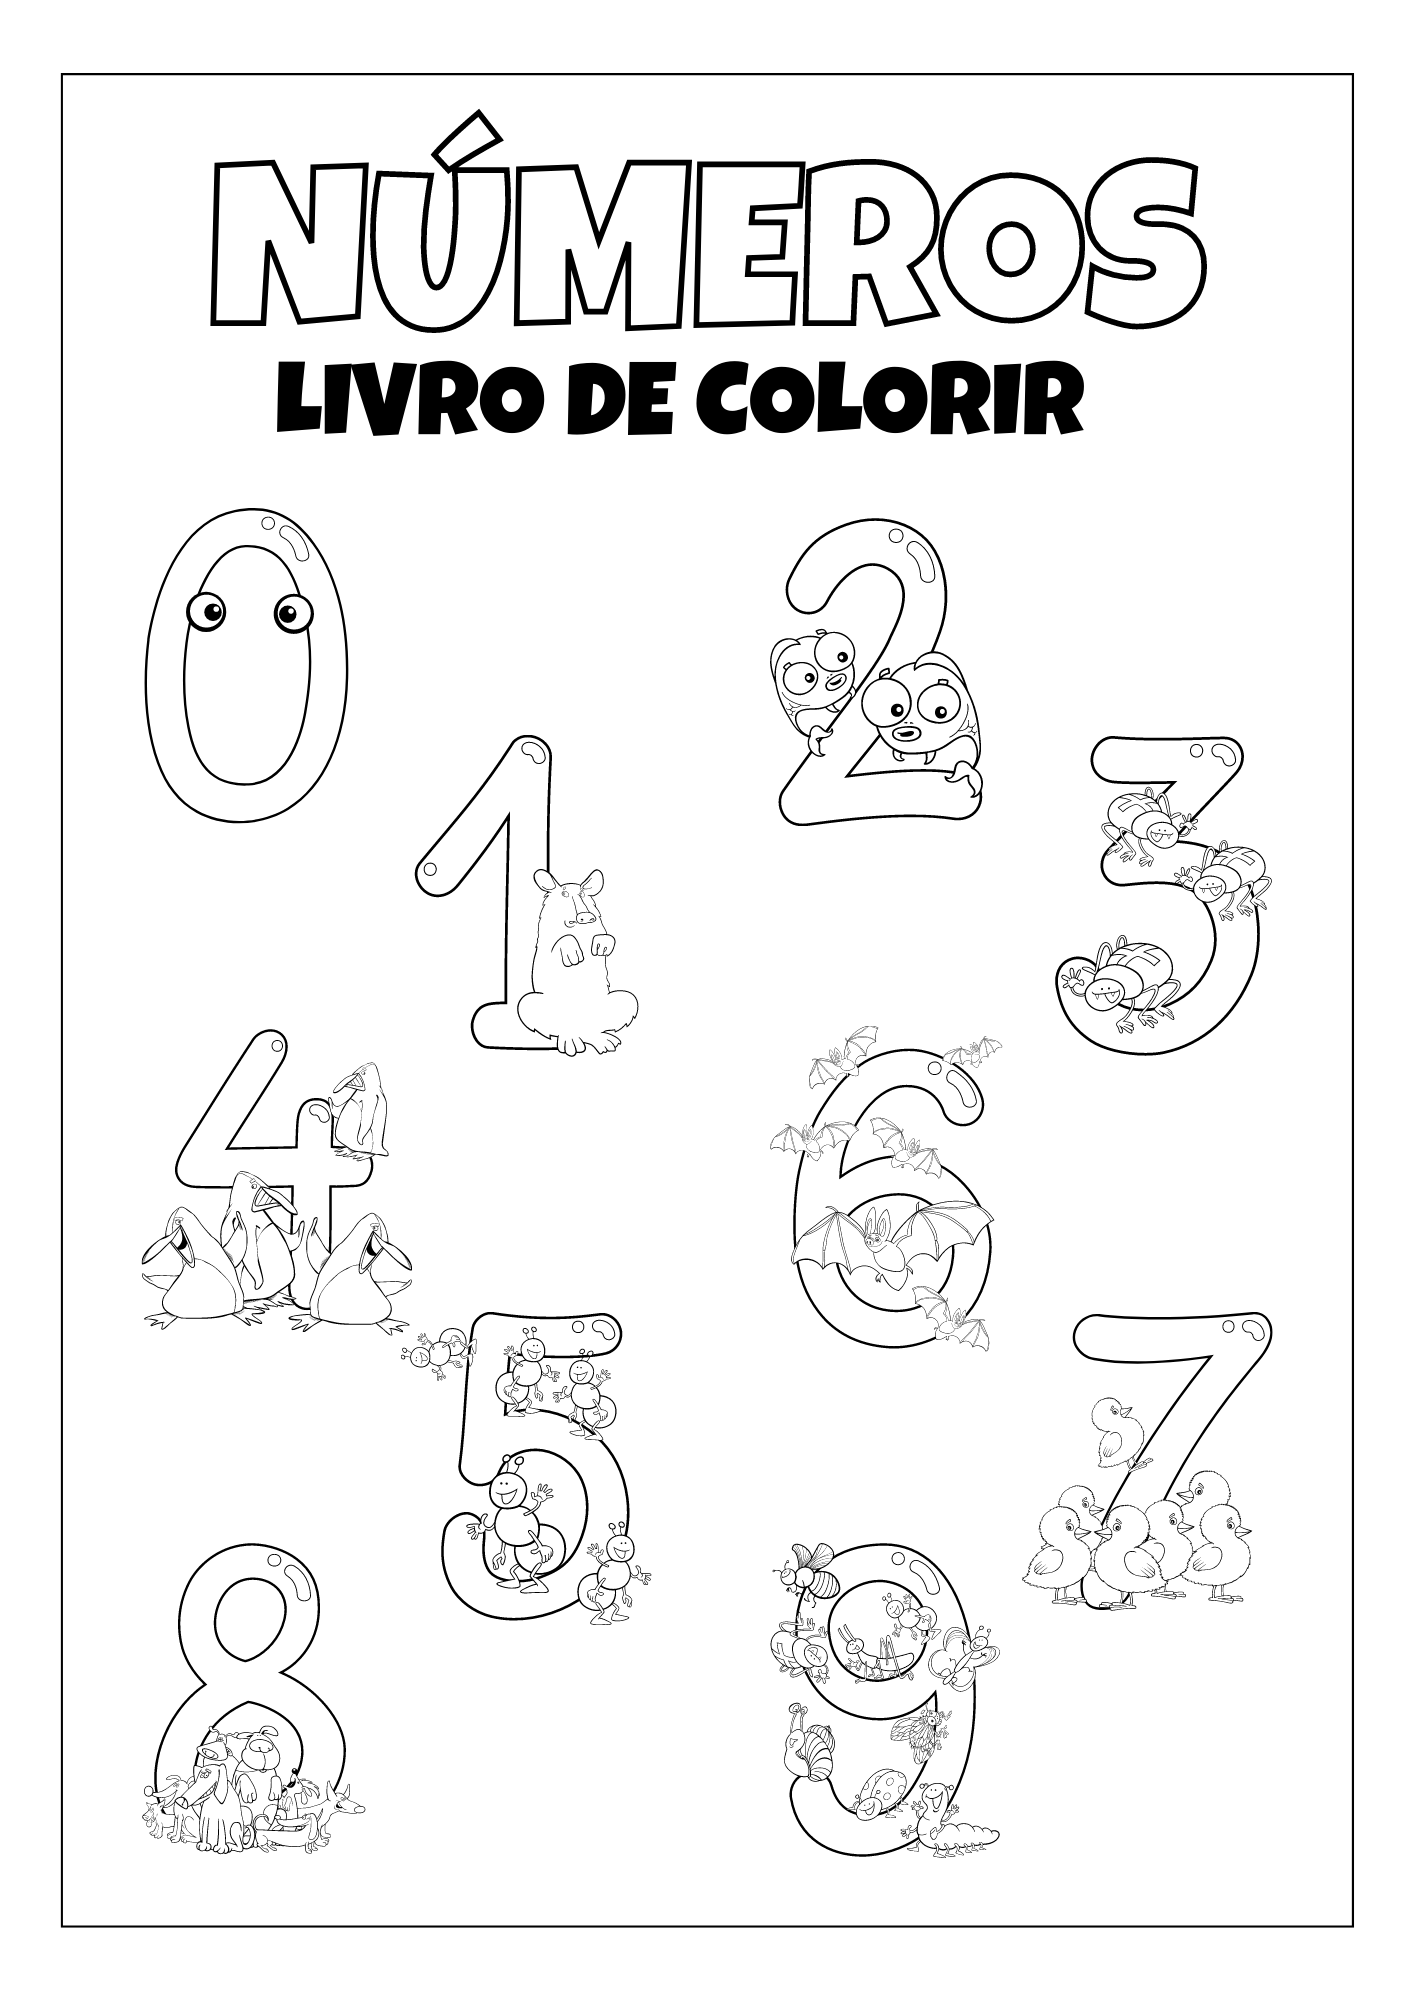 Atividade colorir por números para imprimir